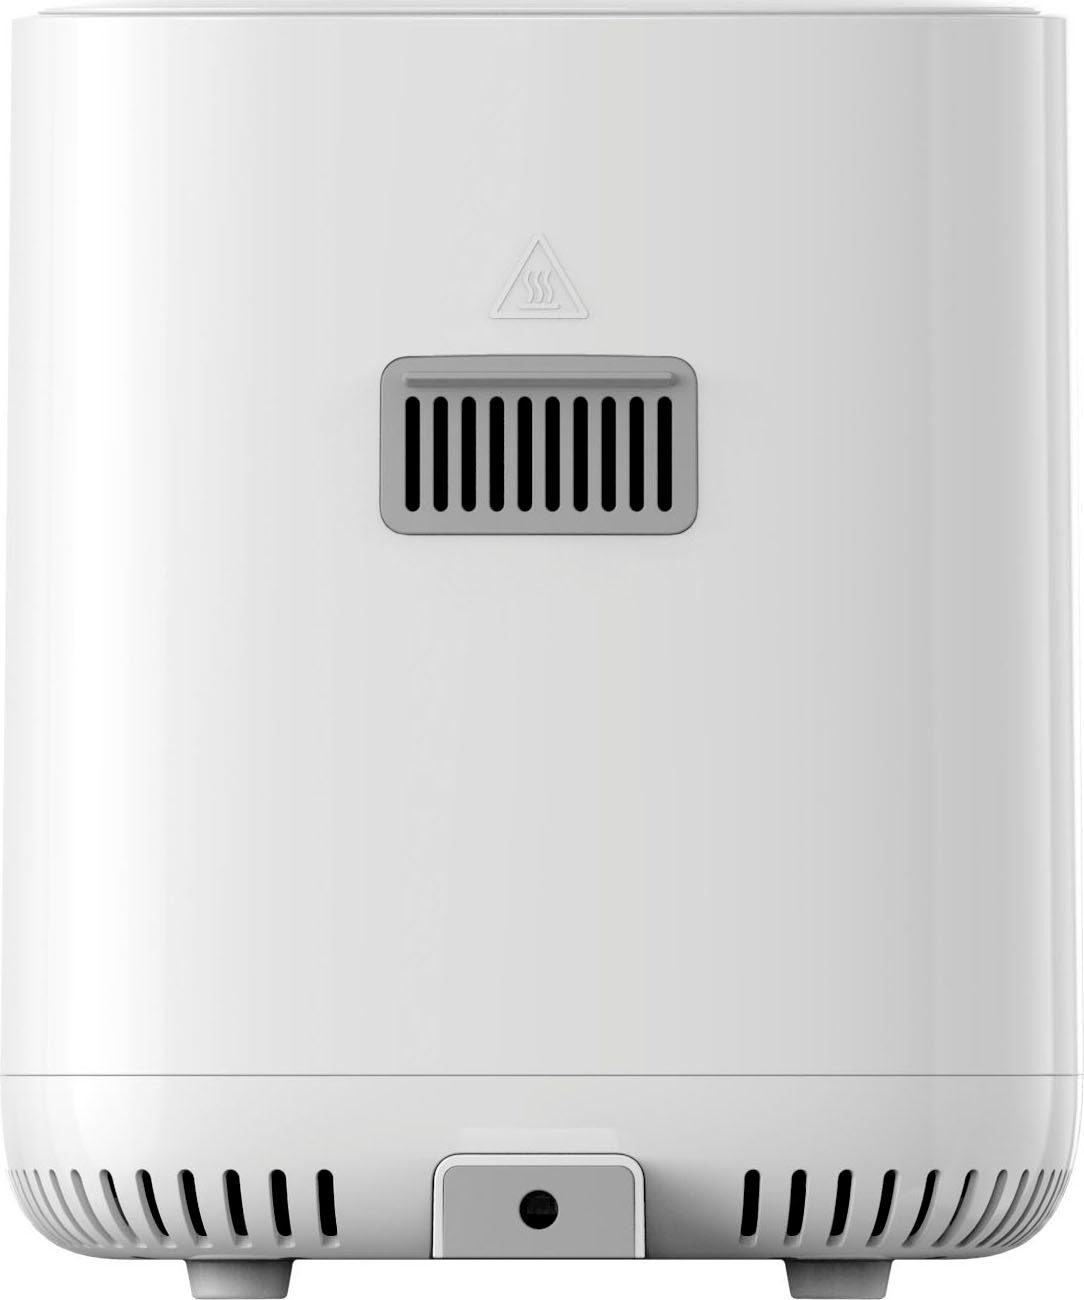 Fryer Pro Smart Heißluftfritteuse 1600 W Air 4L Xiaomi EU,